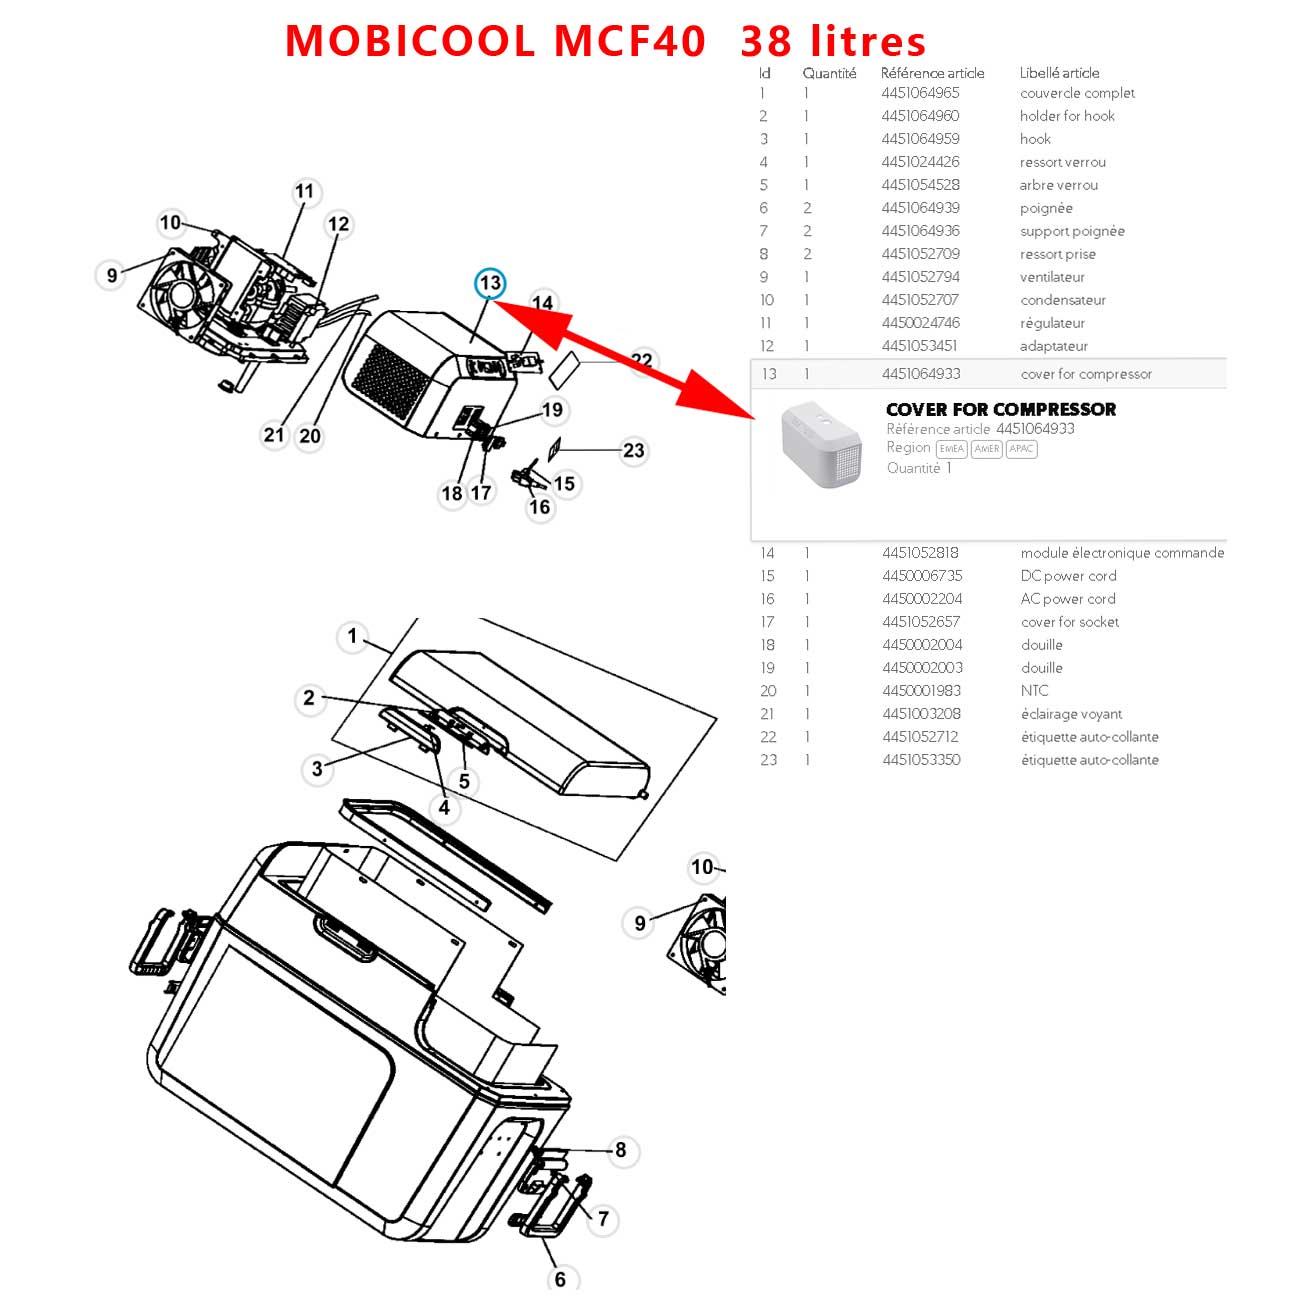 Loquet de fermeture blanc du couvercle des MCF40 MCF32 de Mobicool